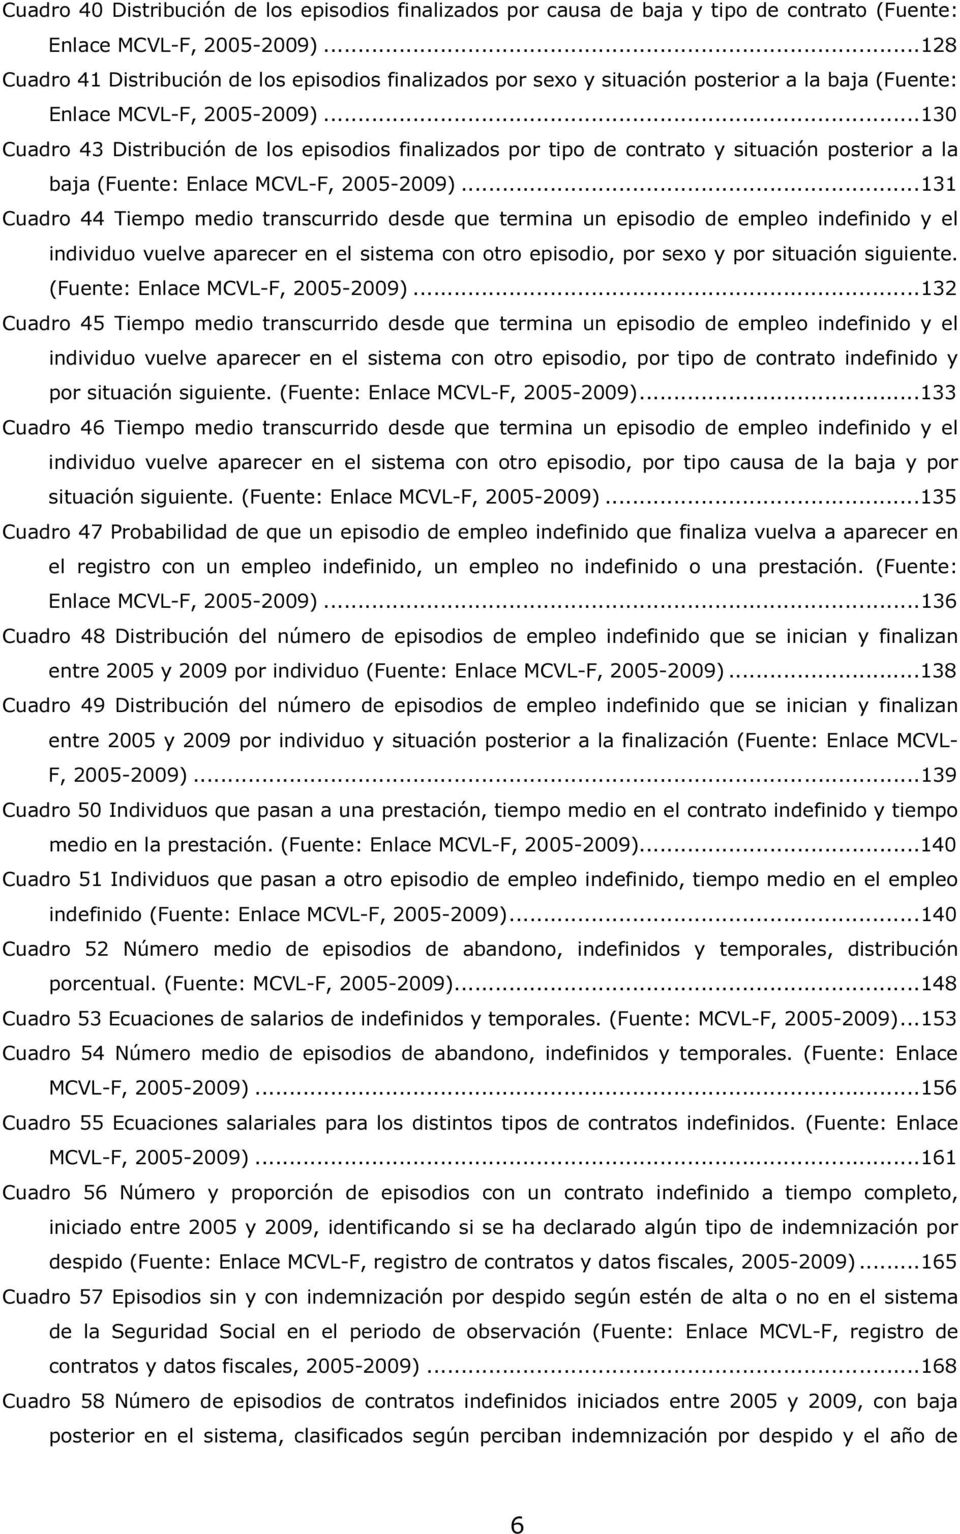 ..130 Cuadro 43 Distribución de los episodios finalizados por tipo de contrato y situación posterior a la baja (Fuente: Enlace MCVL-F, 2005-2009).